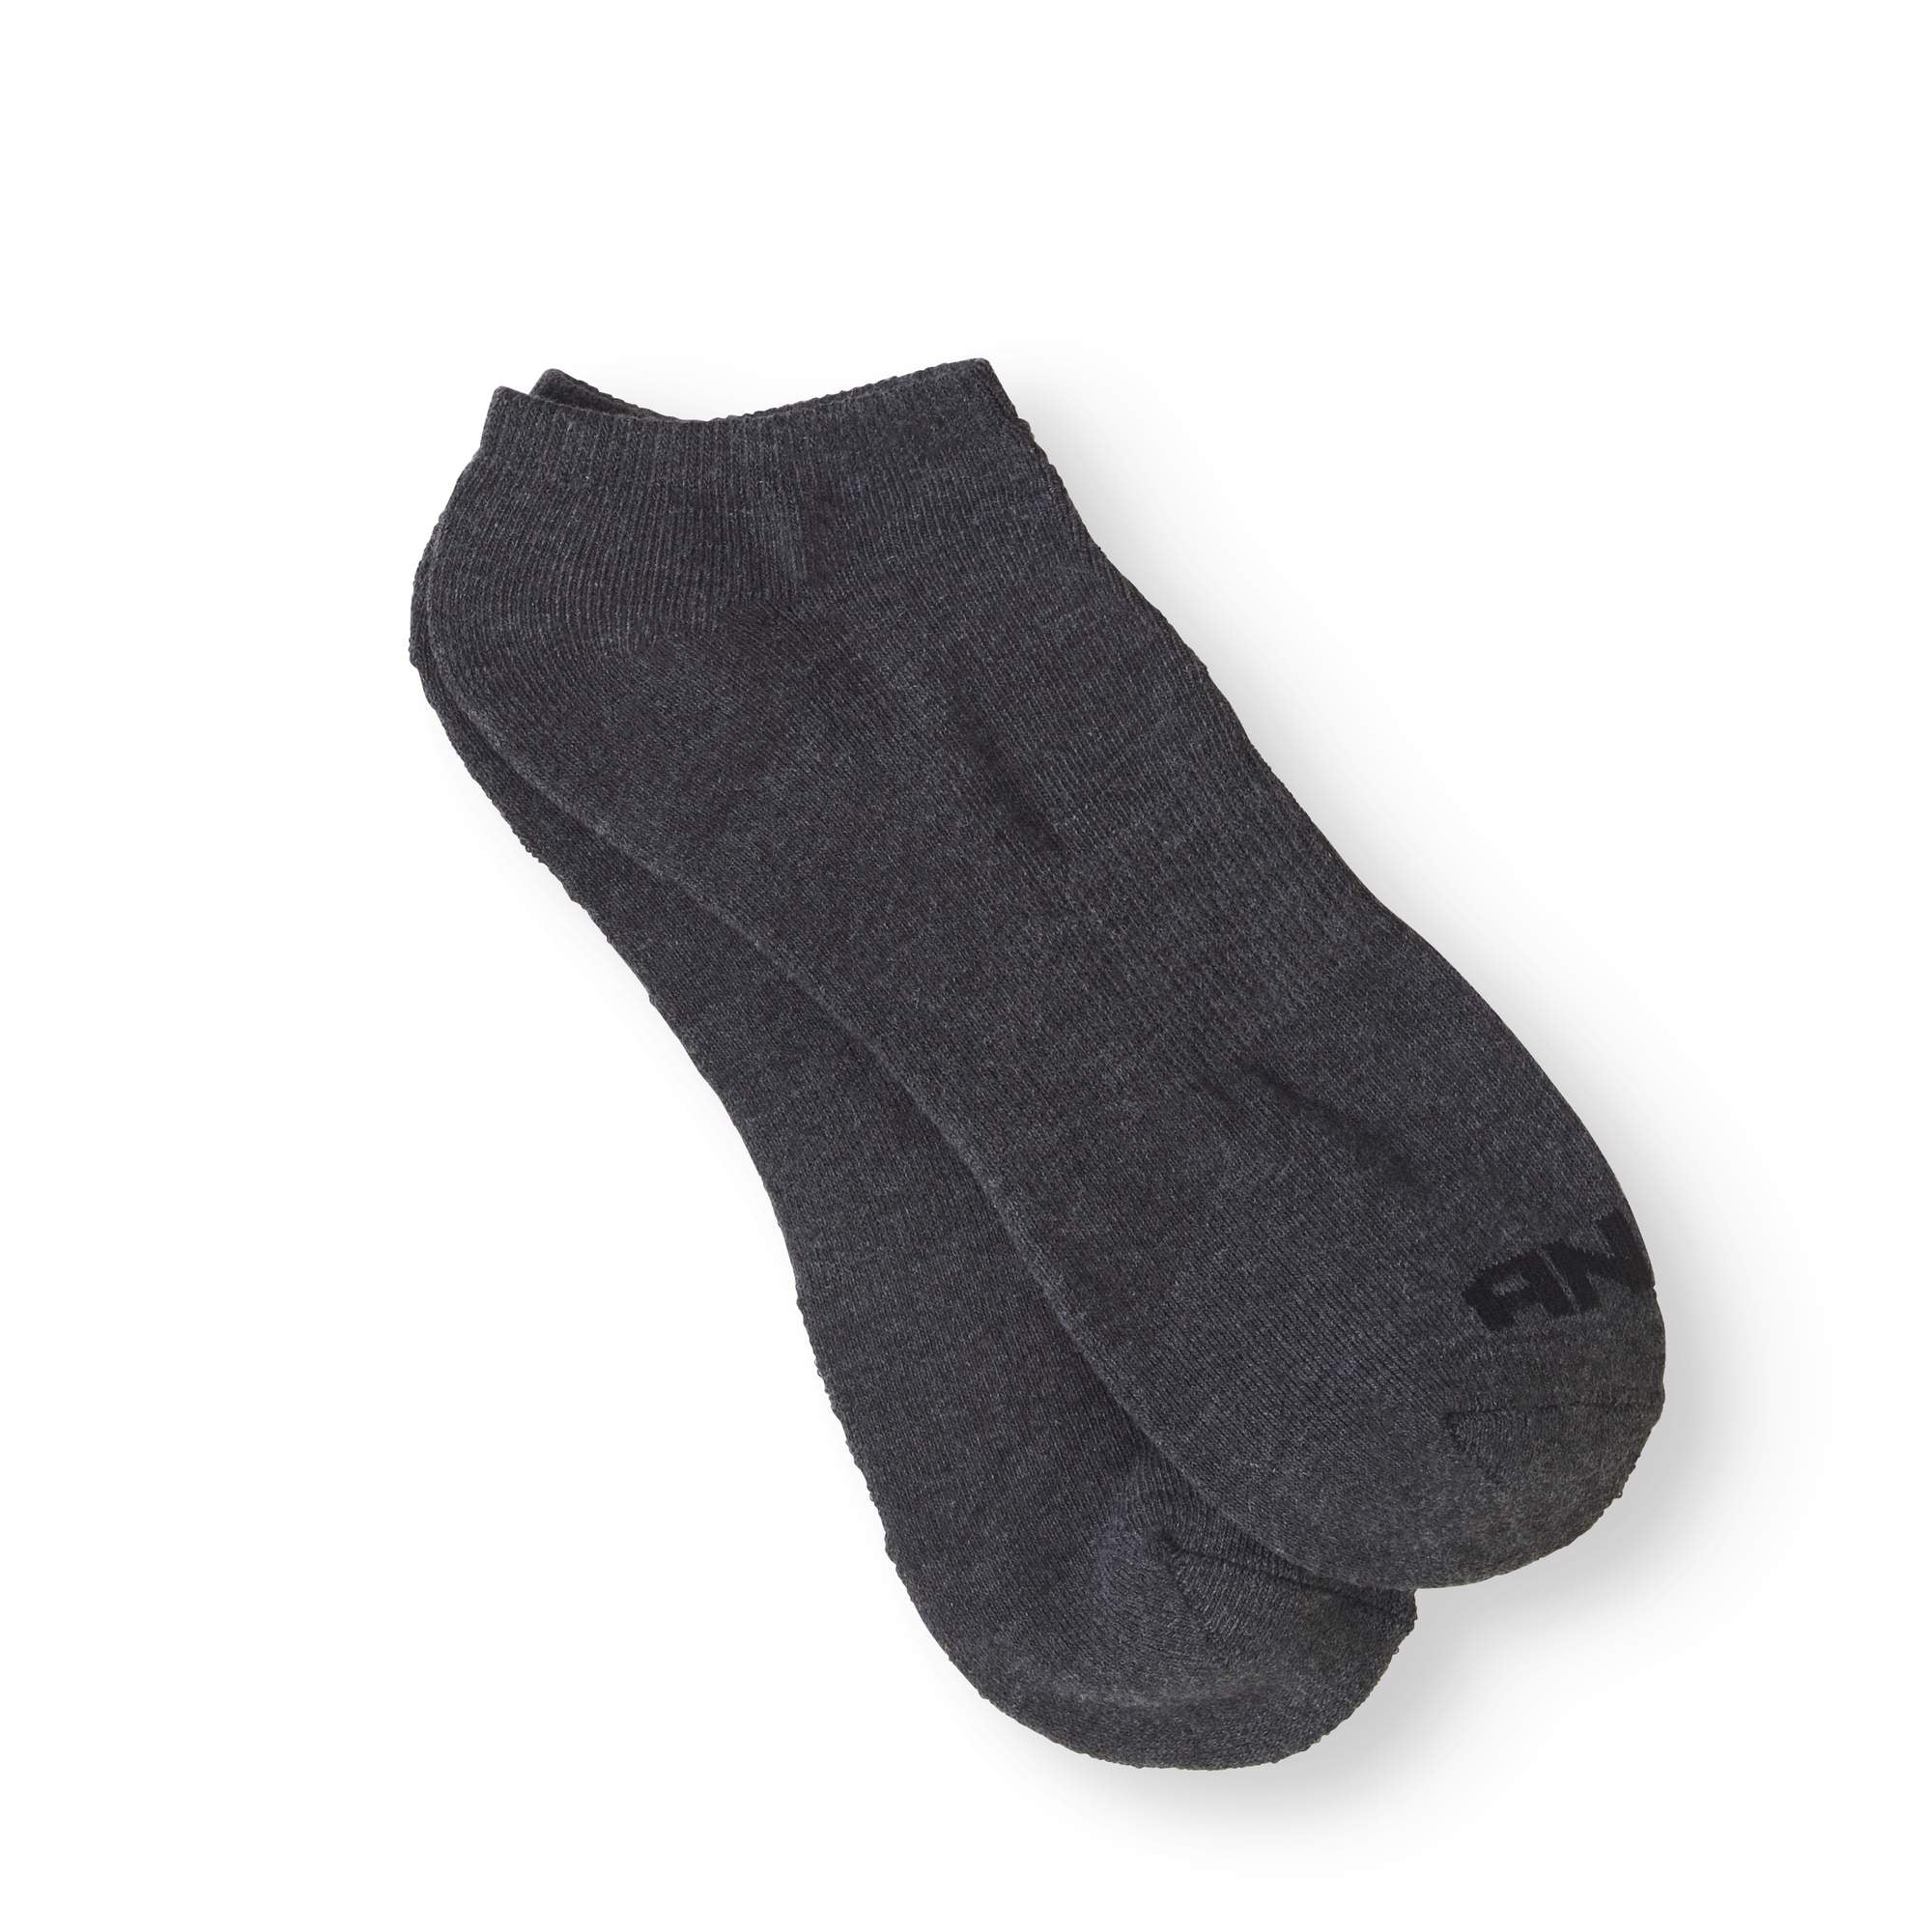 AND1 Men's Low Cut Socks, 12 Pack - Walmart.com